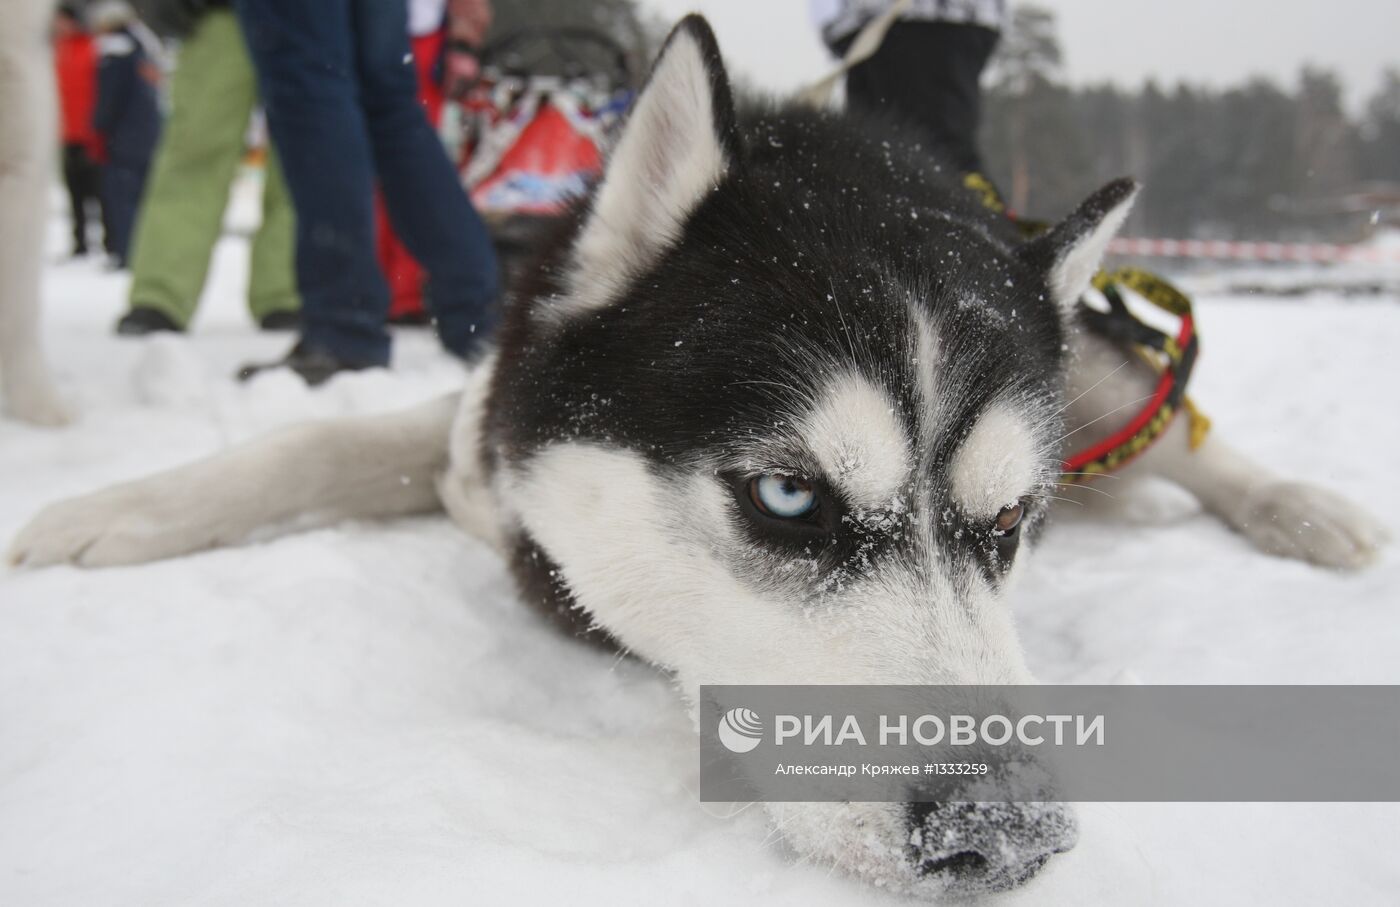 Гонки на собачьих упряжках "Рождественский заезд - 2013"